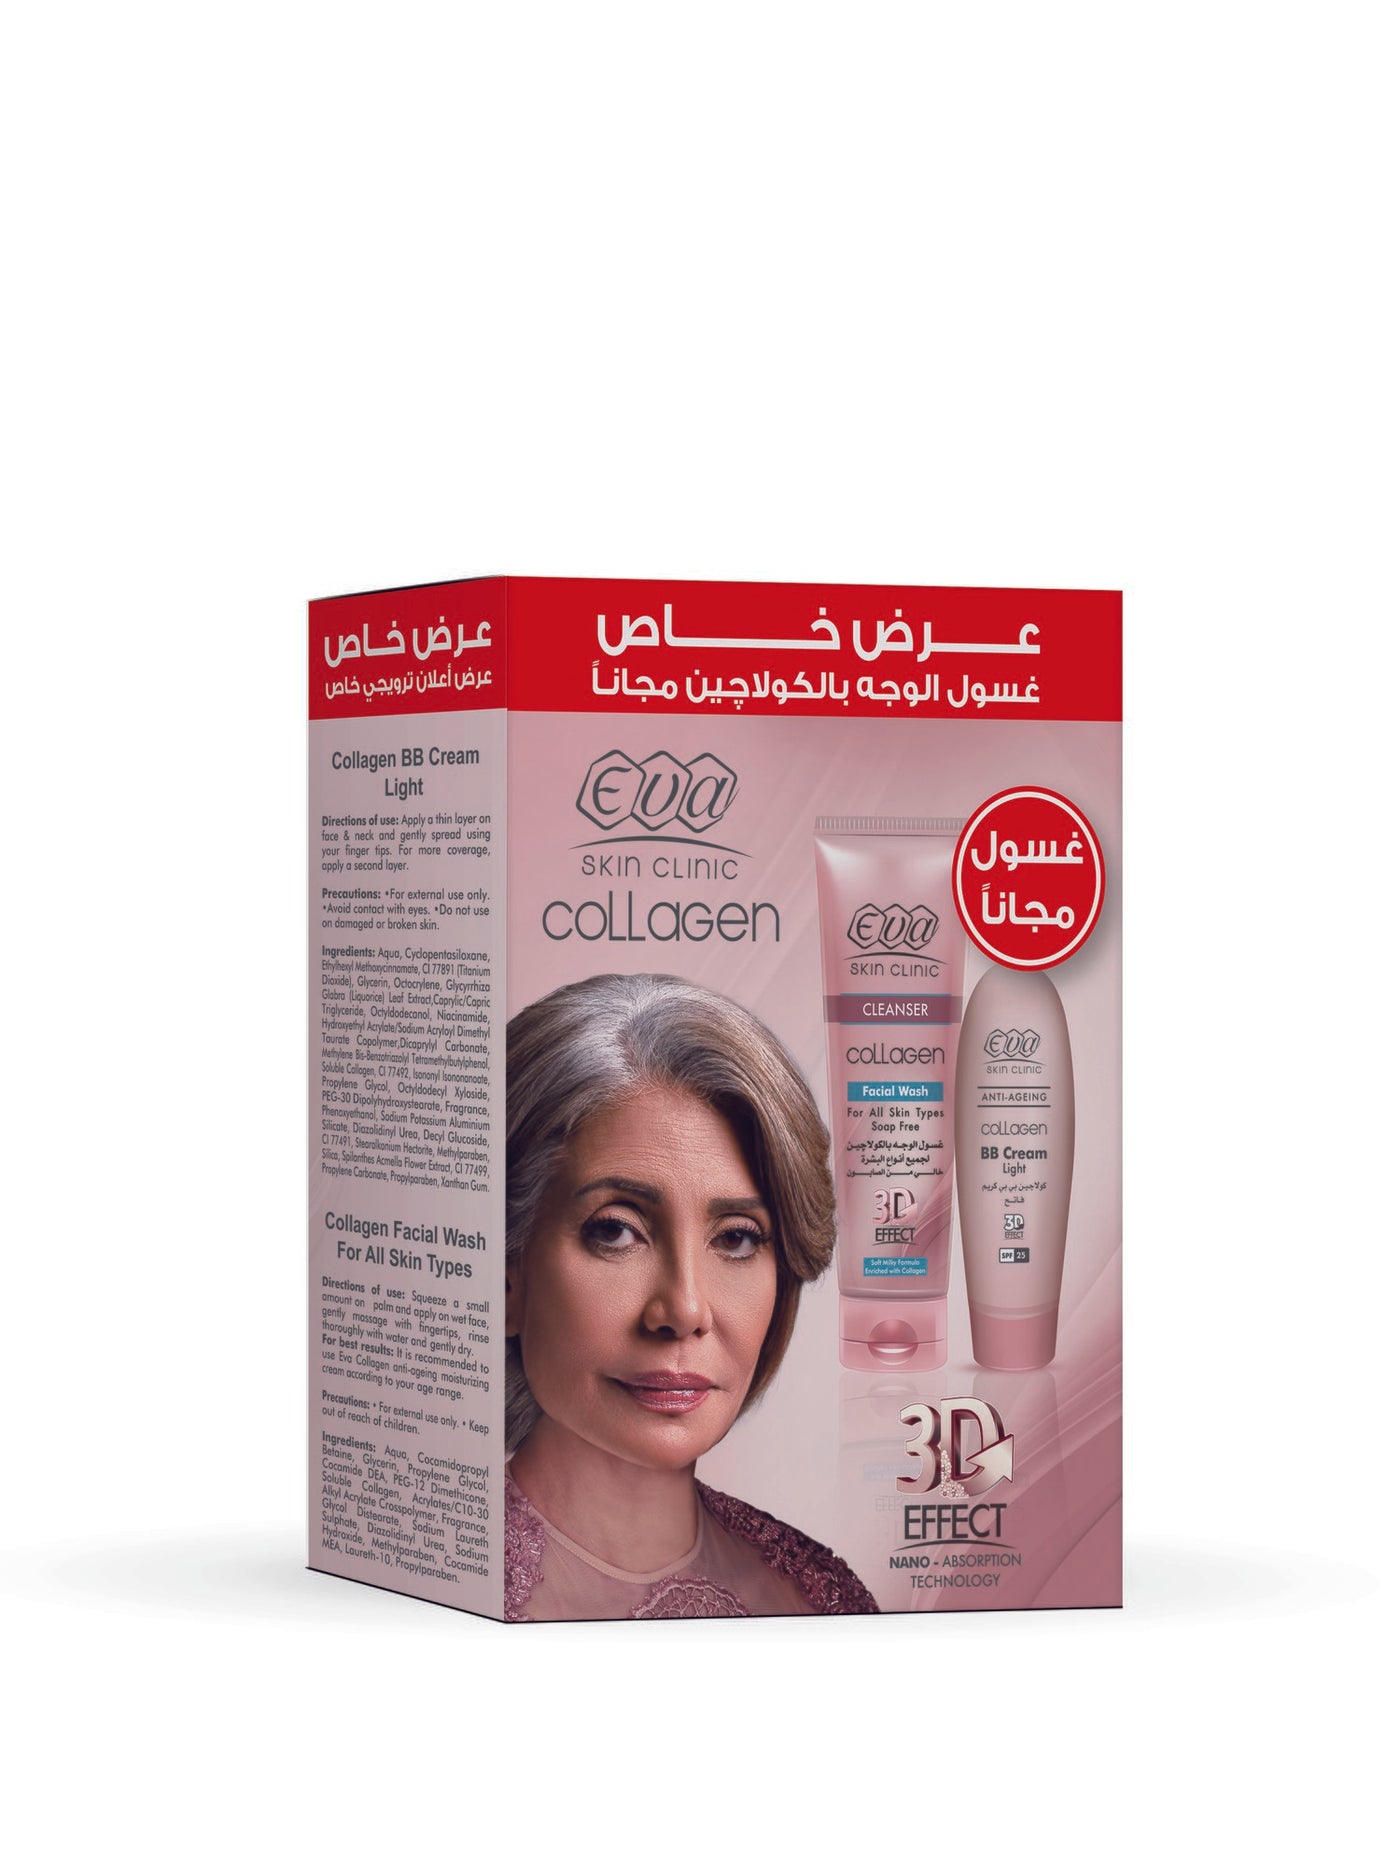 Women's Eva Skin Clinic Collagen BB Cream Light 50ml + Collagen Face Wash 150ml - Save 48 EGP - March 2021